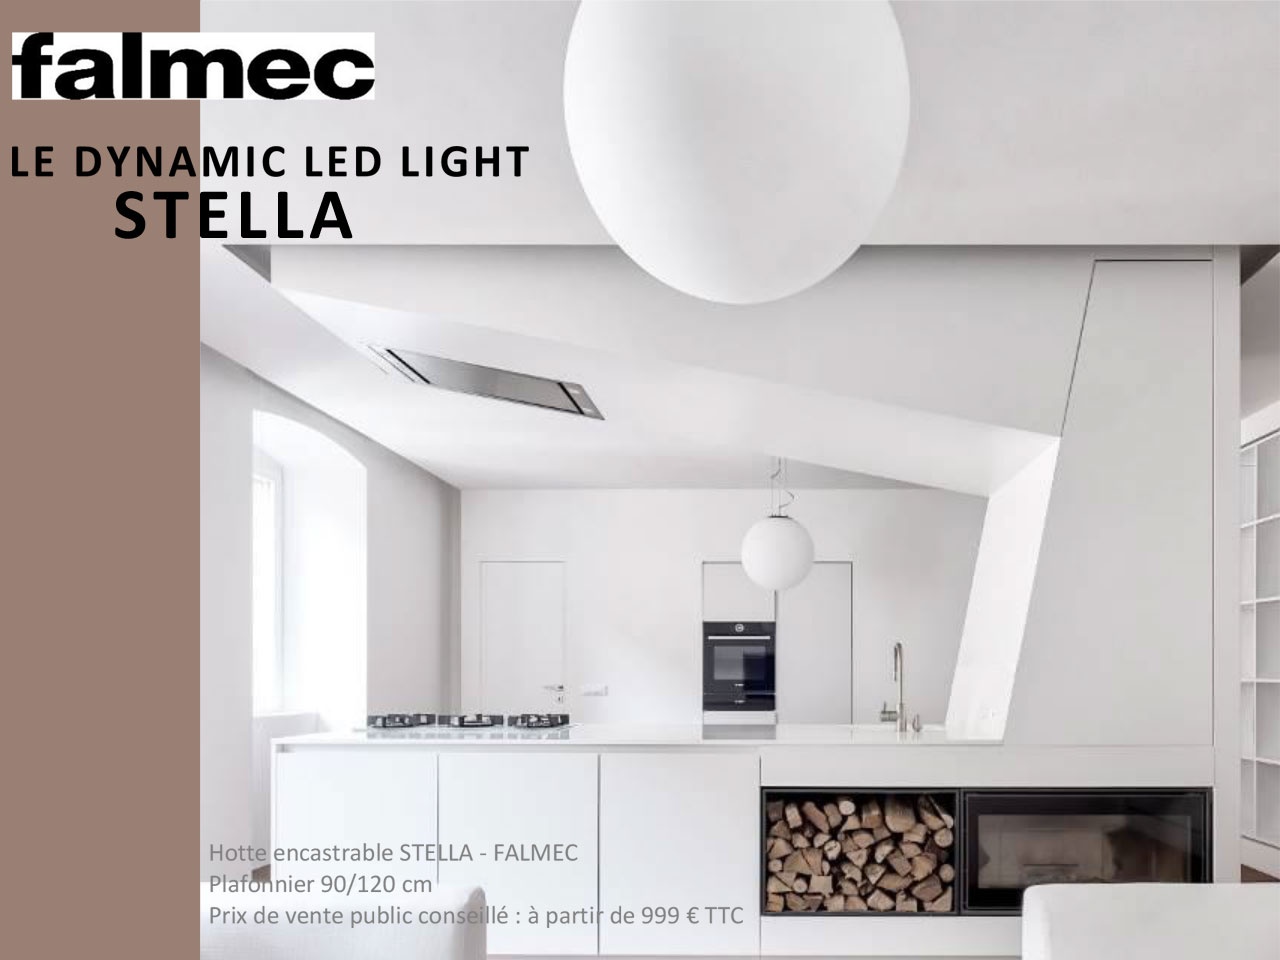 Falmec introduit le Dynamic Led Light sur ses hottes encastrables